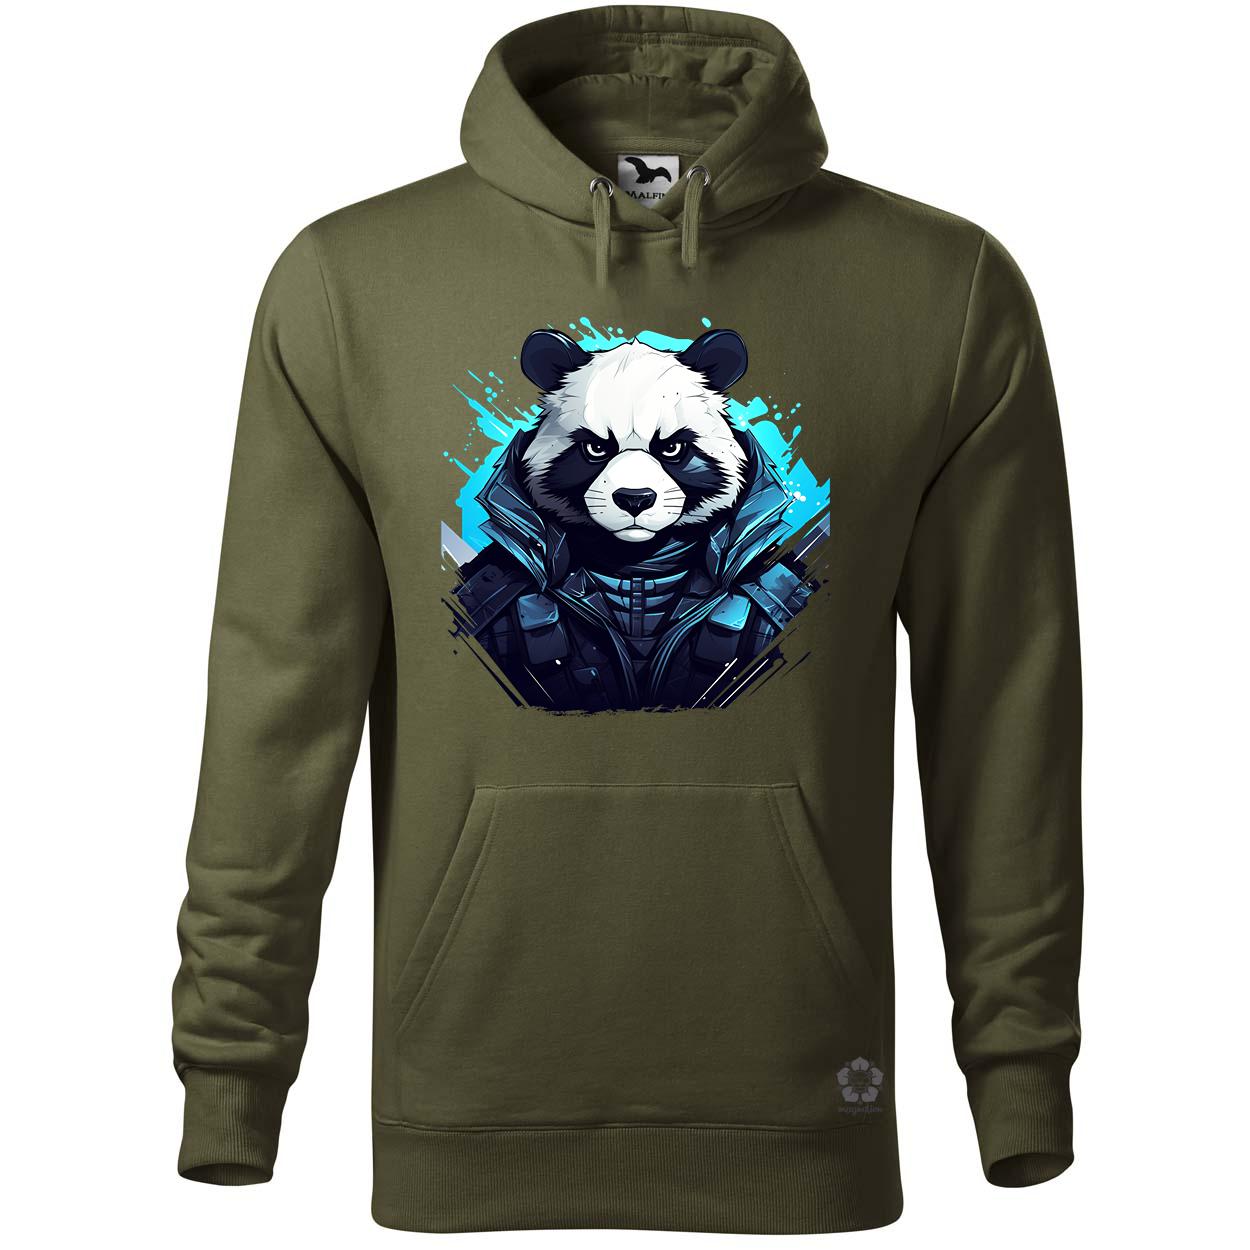 Cyberpunk panda v4